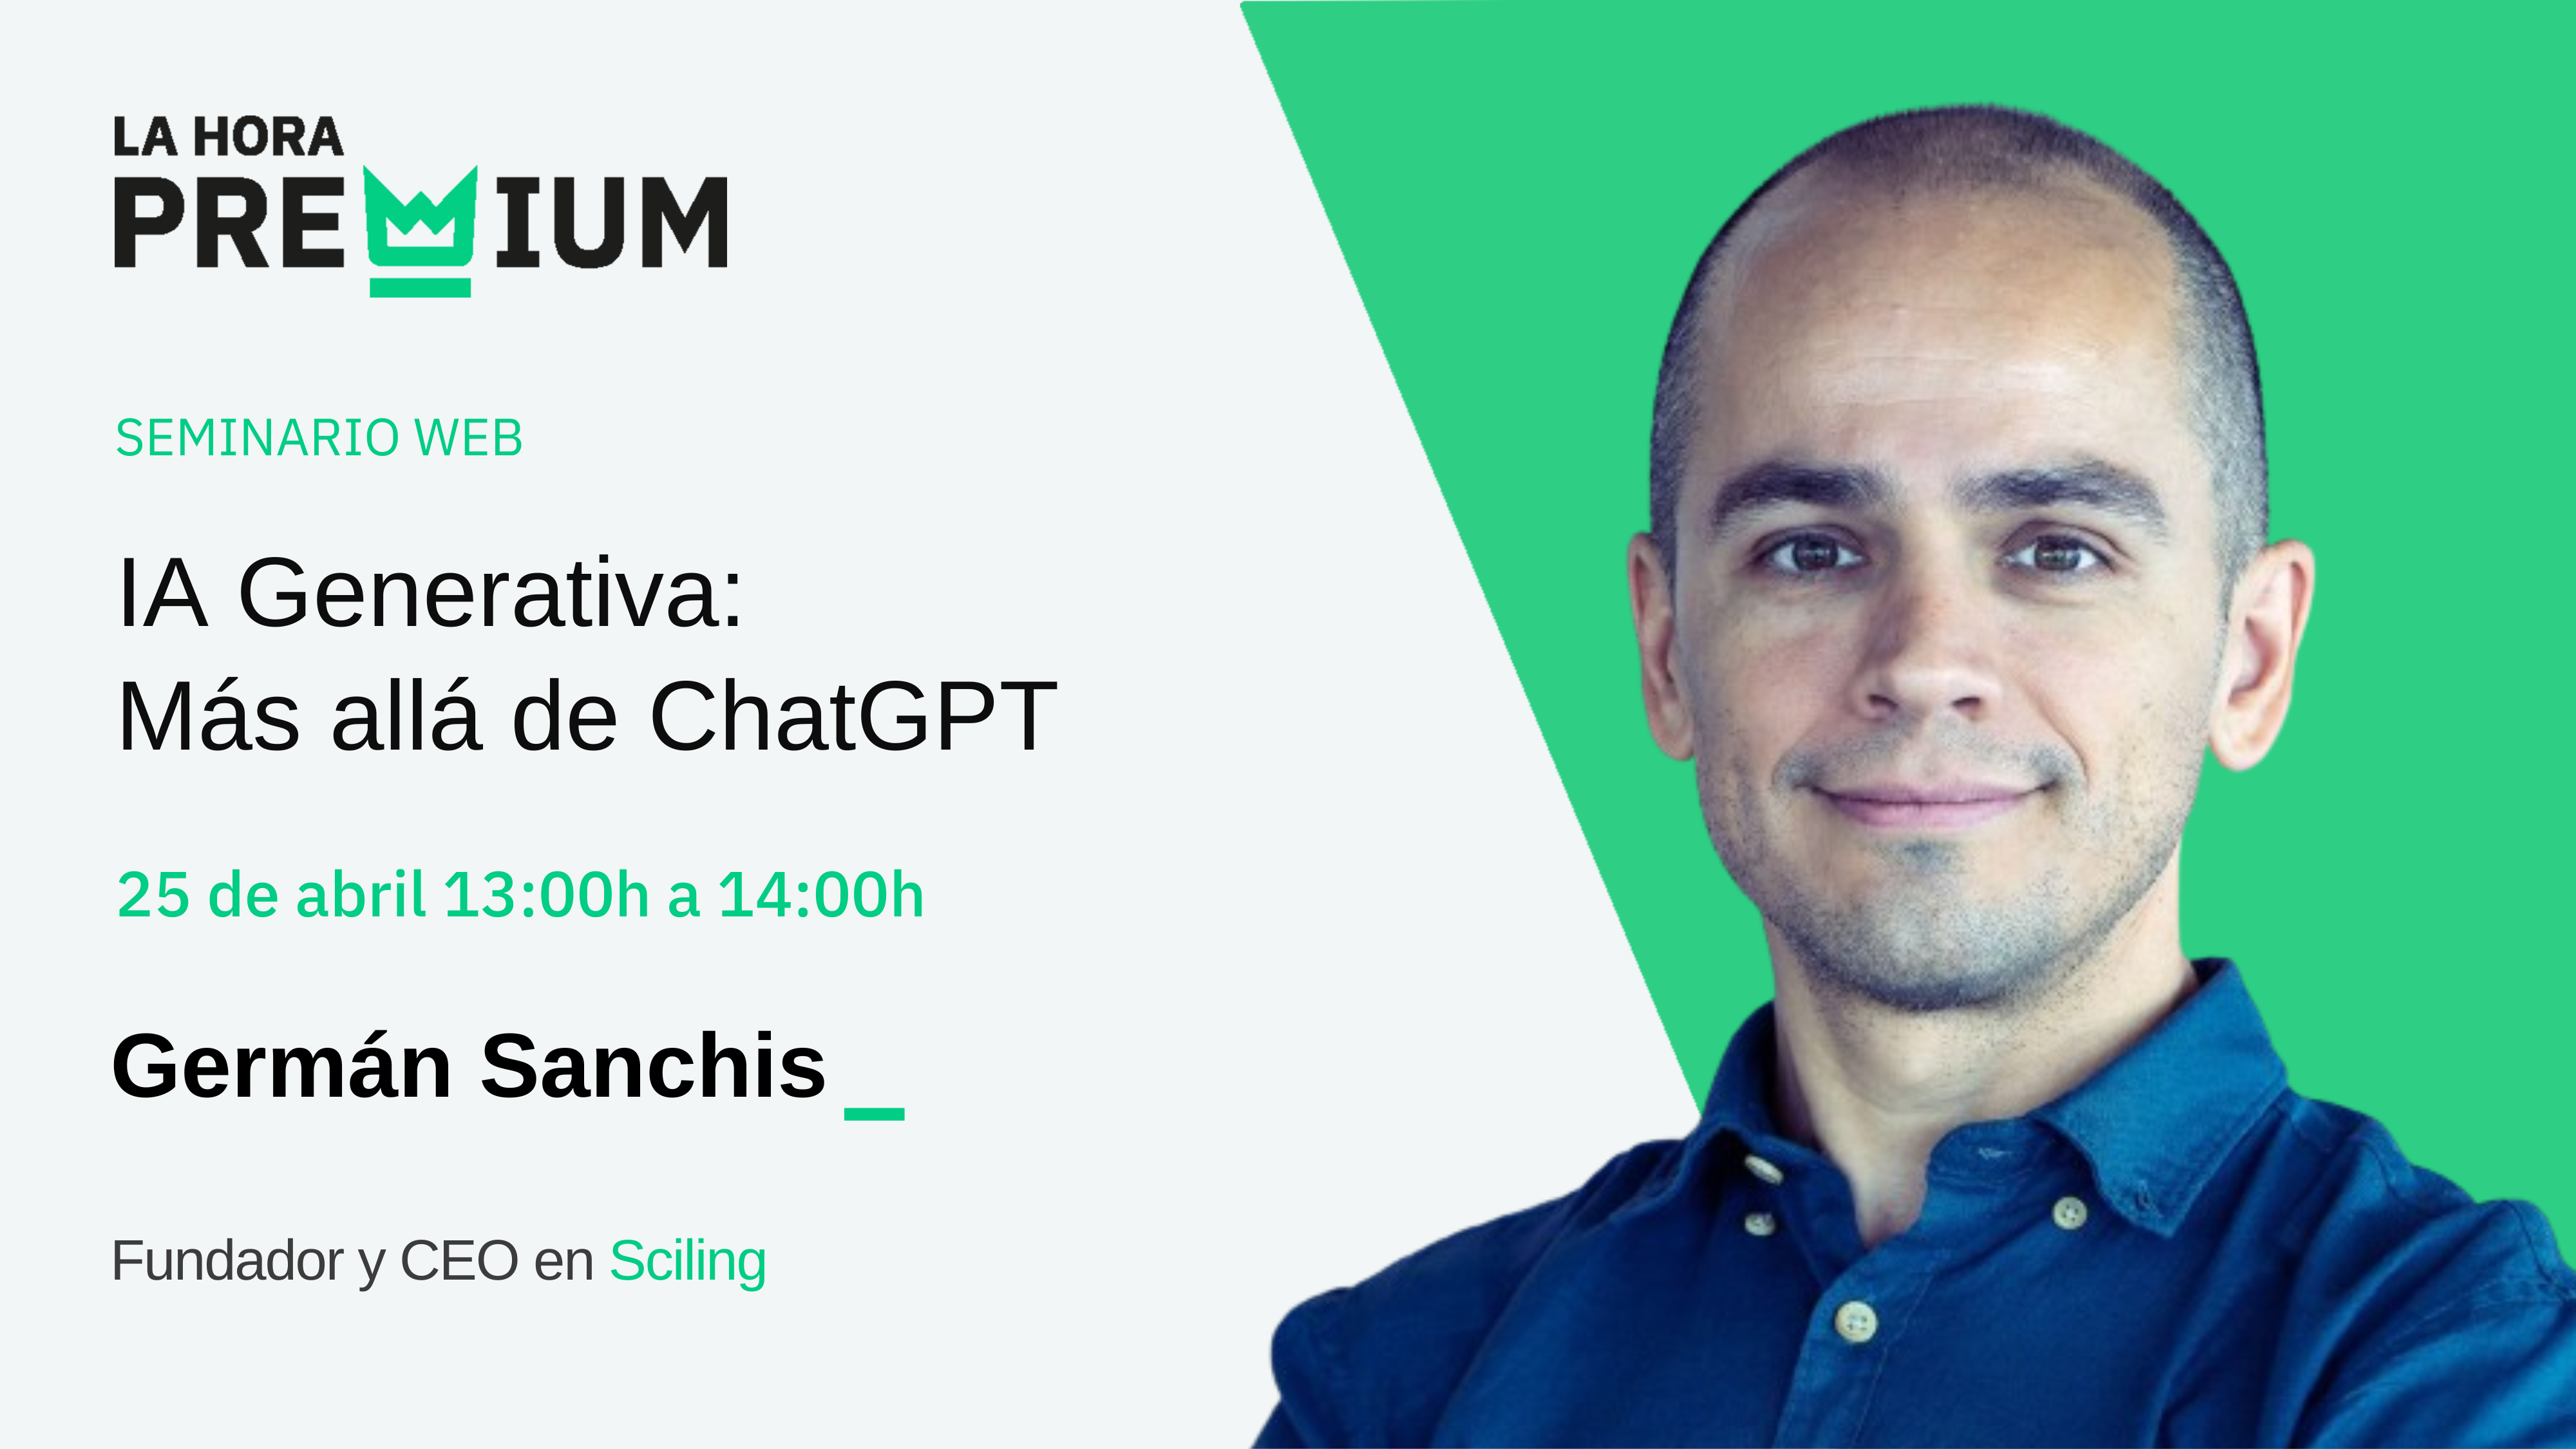 Germán Sanchis hablará en la Hora Premium acerca de la «IA Generativa: más allá de ChatGPT»